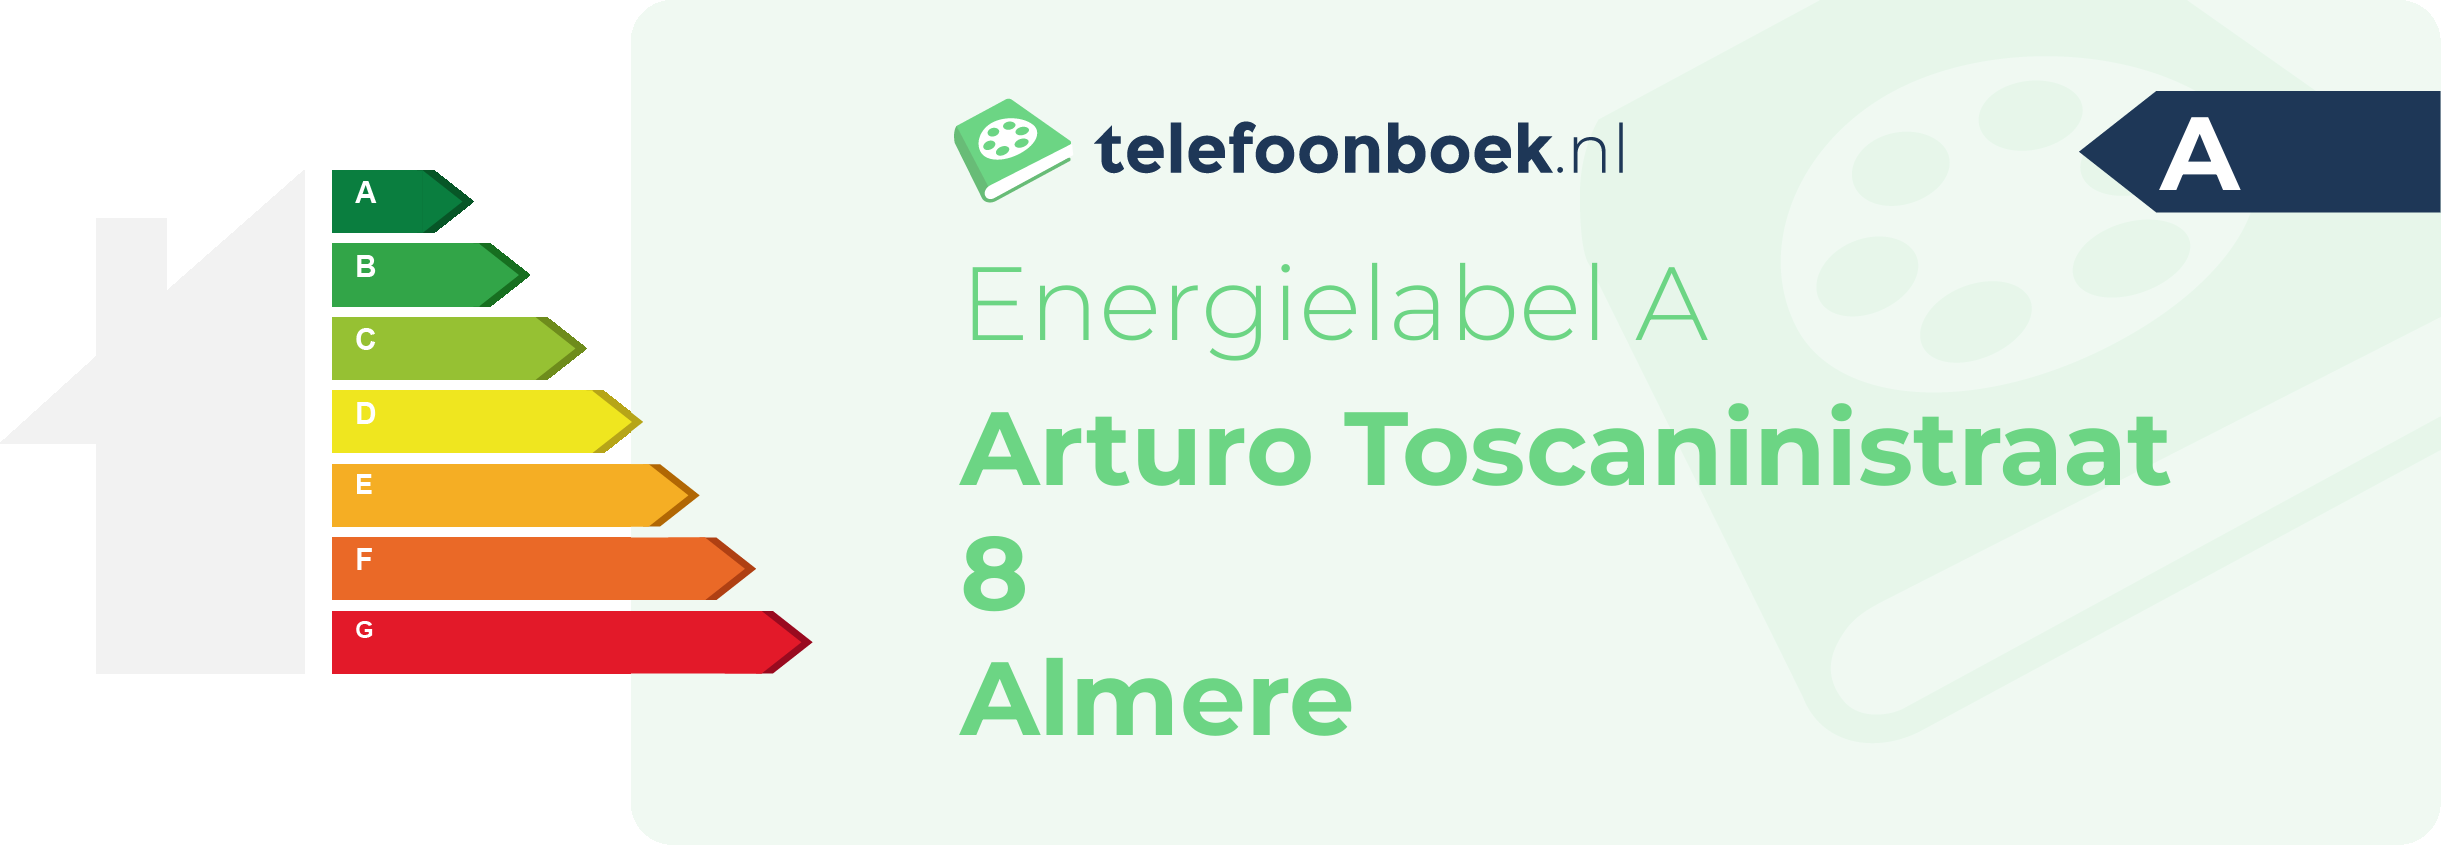 Energielabel Arturo Toscaninistraat 8 Almere